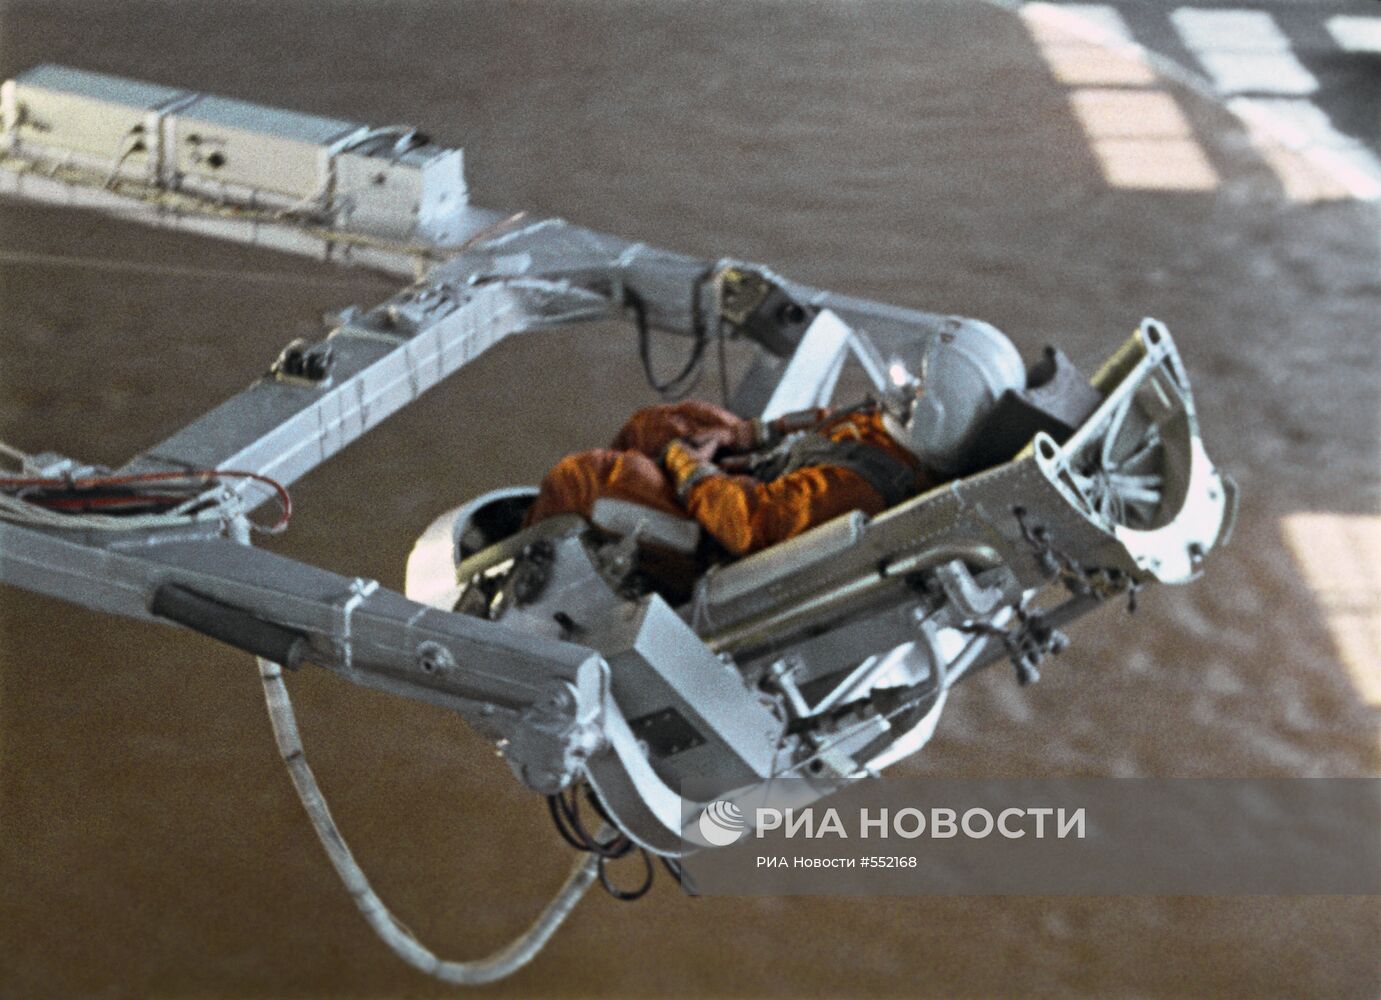 Юрий Гагарин в Центре подготовки космонавтов